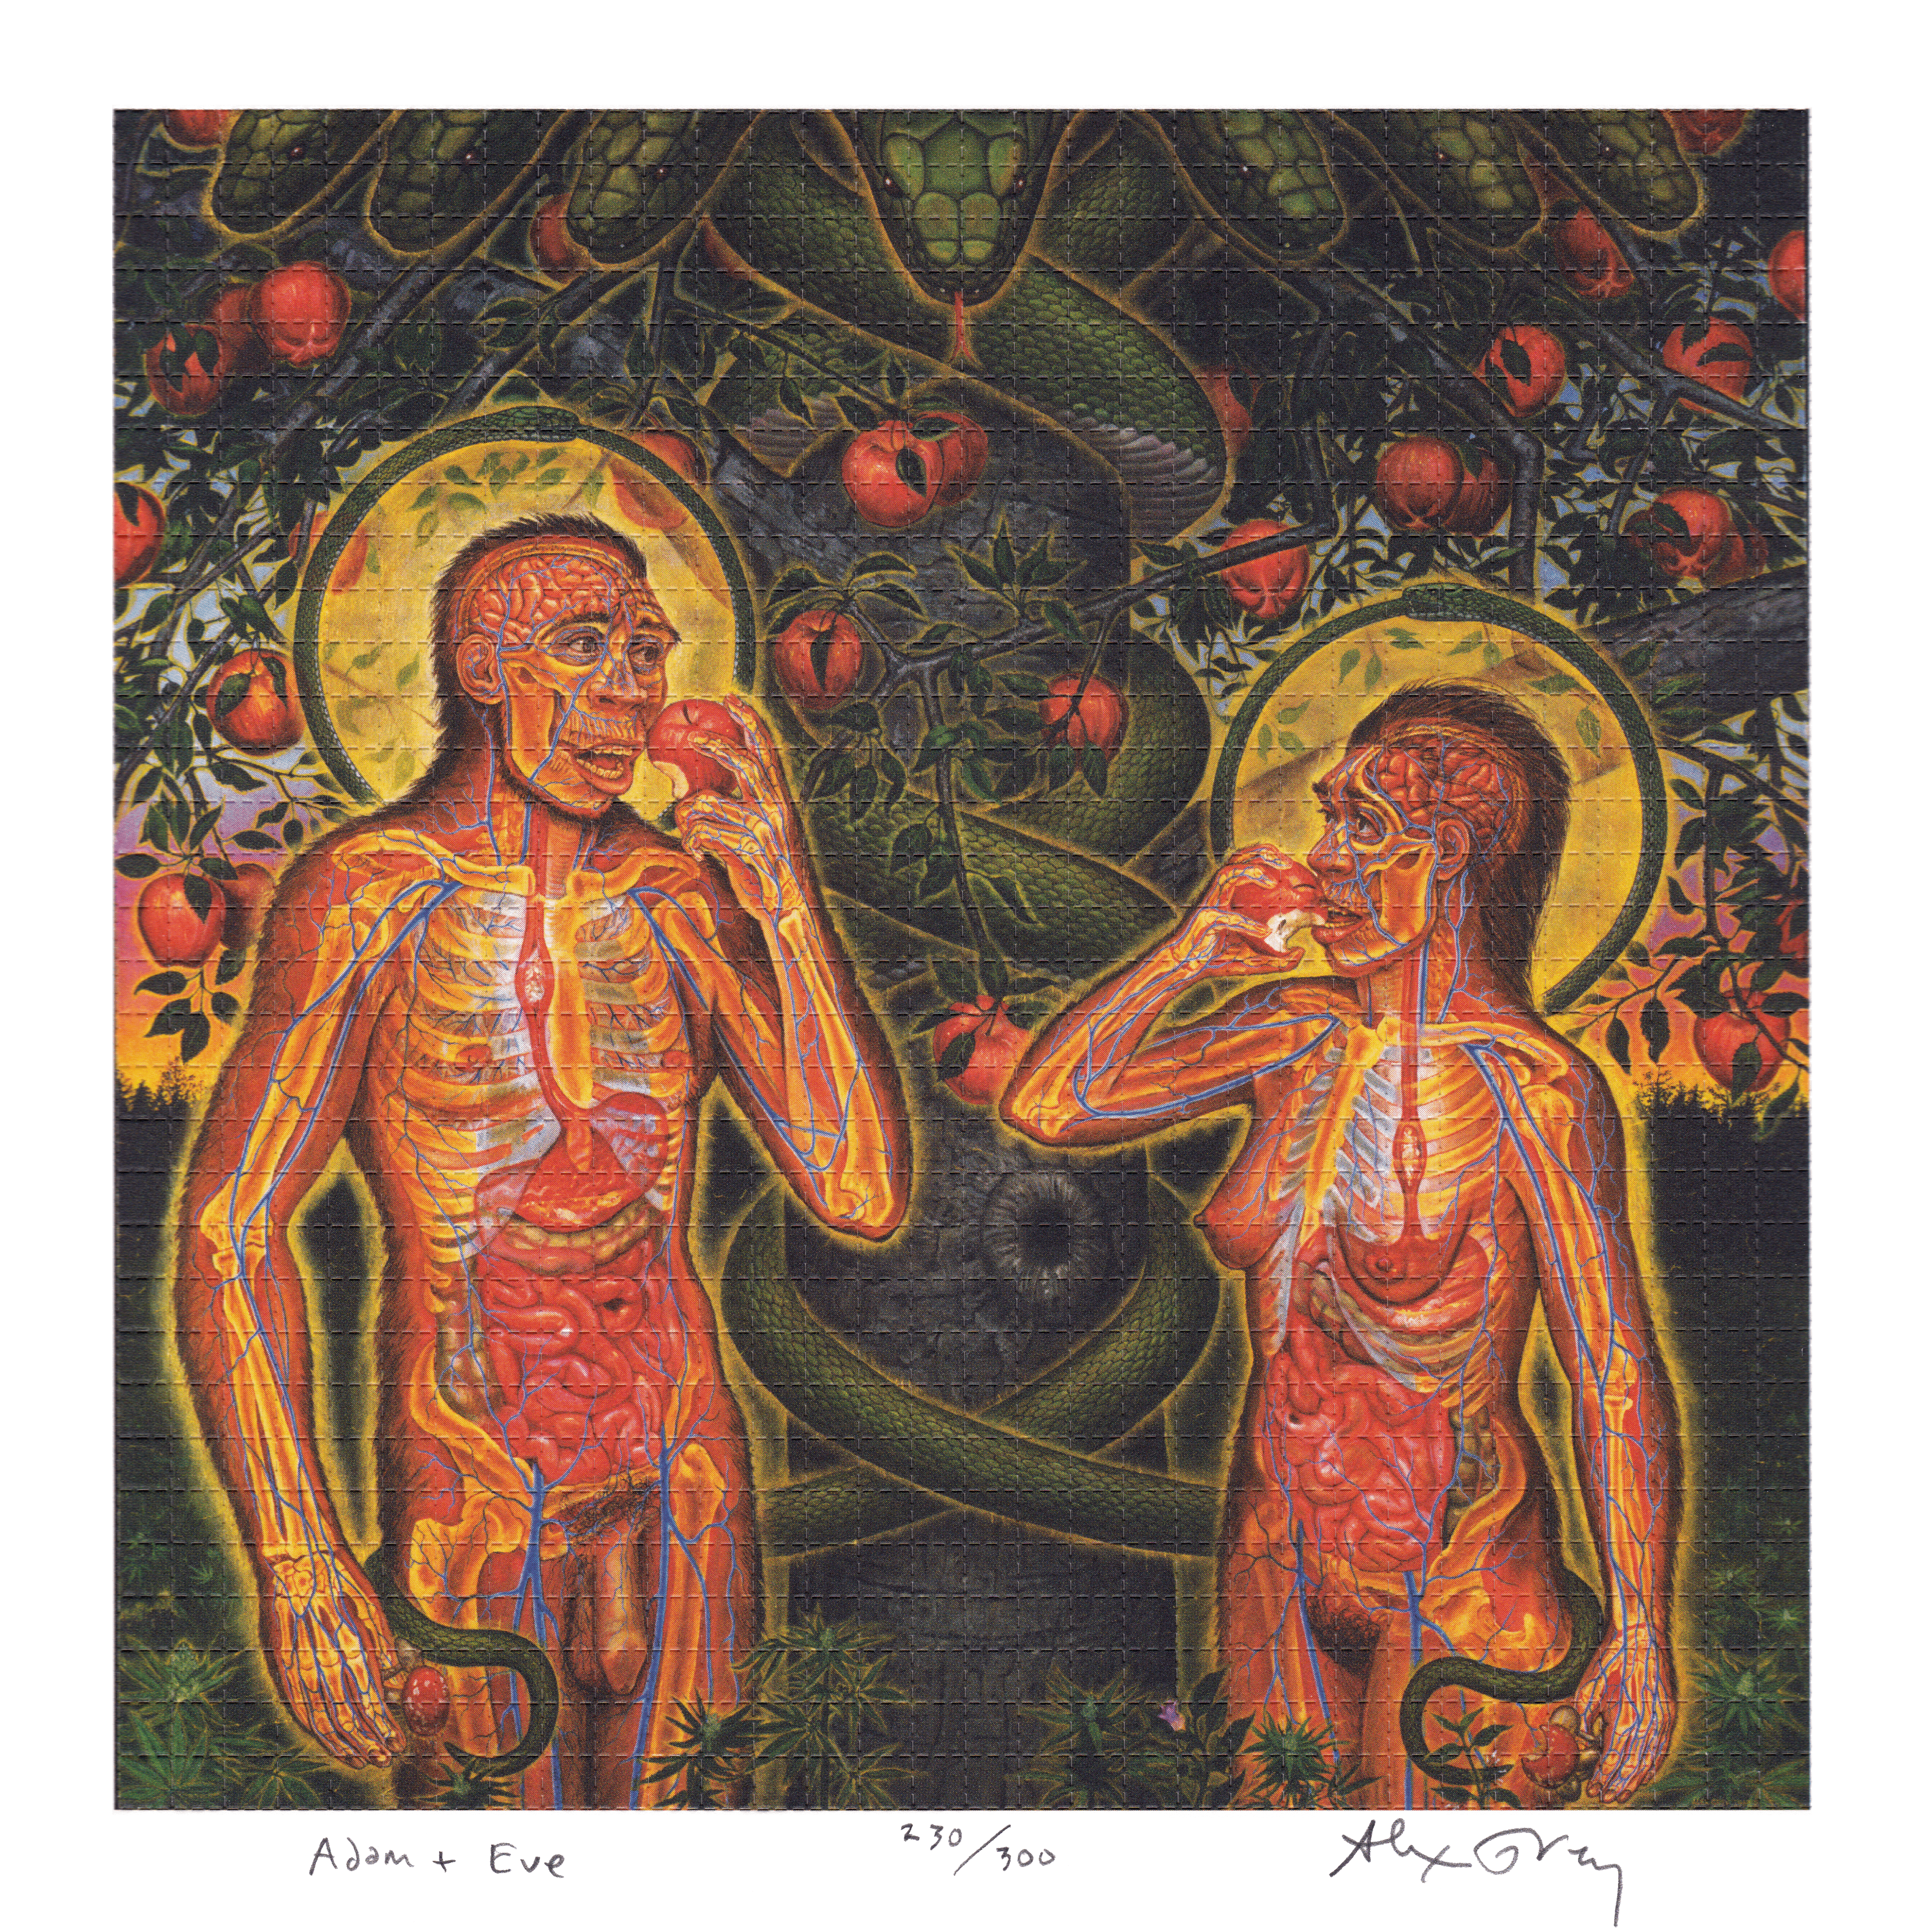 Adam & Eve by Alex Grey as LSD Blotter Art #230/300